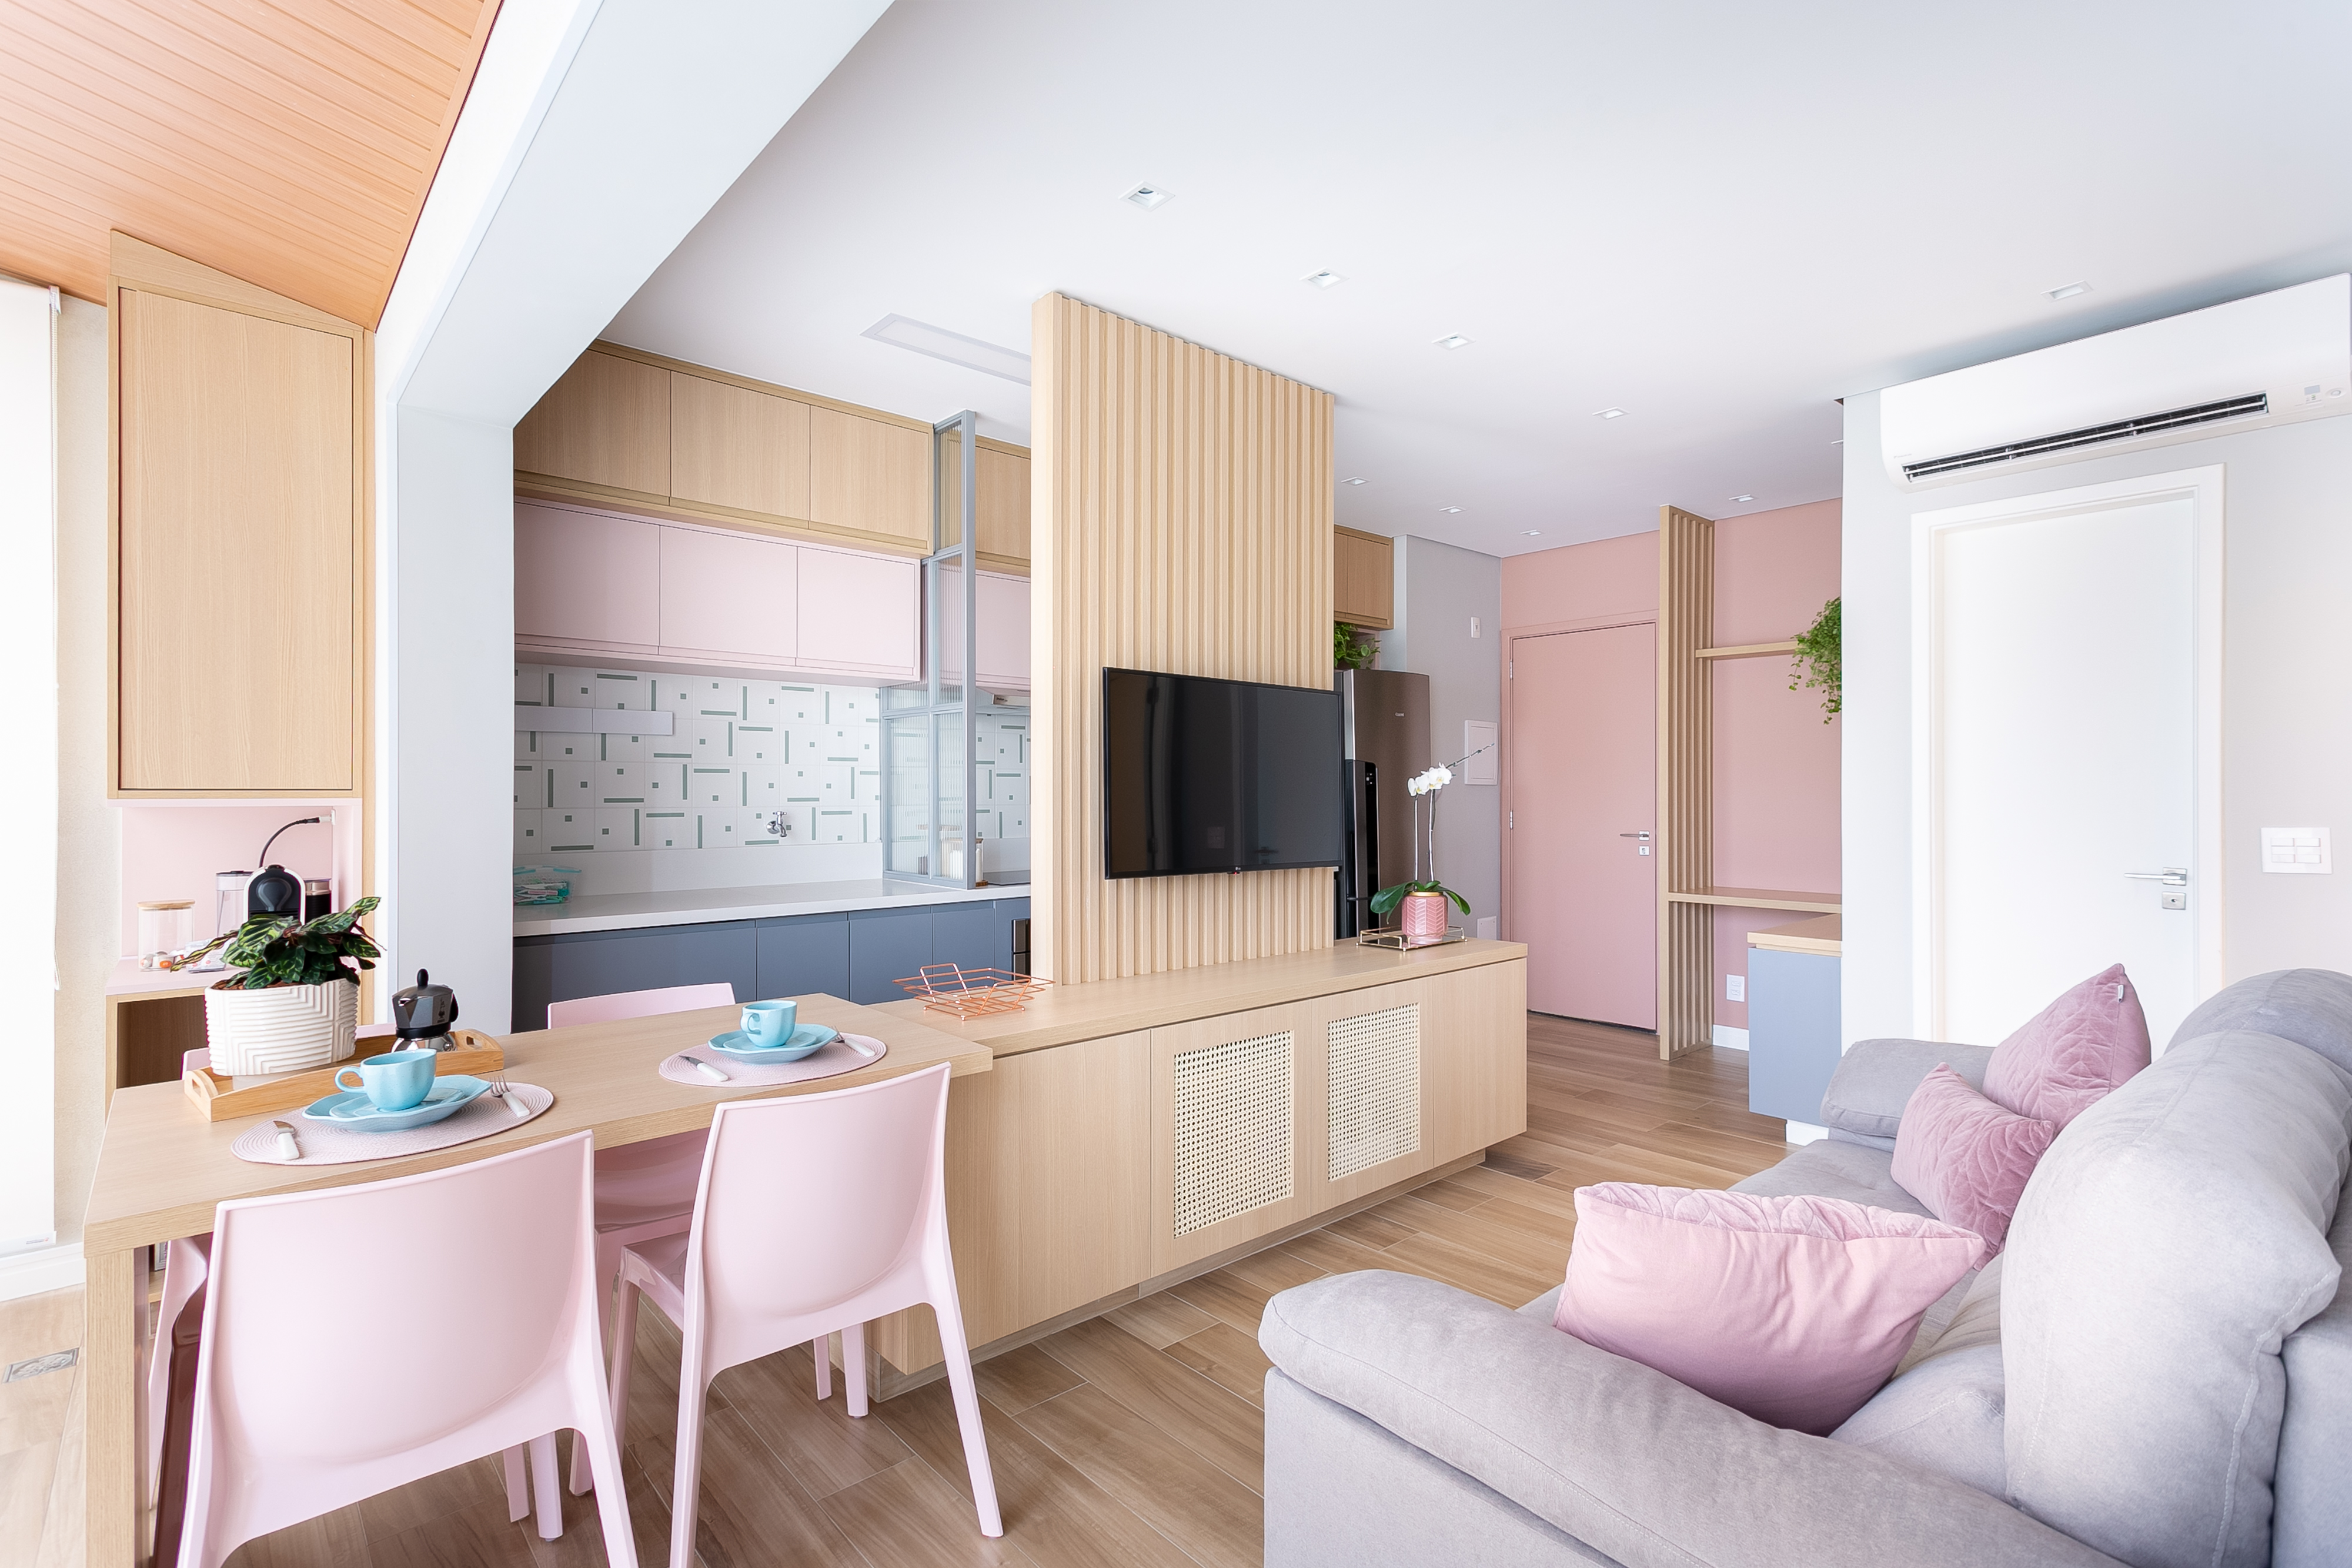 Mesa cozinha estende varanda apê 47 m2 Loft 7 Arquitetura apartamento pequeno decoração sala cozinha painel madeira rosa cinza tv madeira